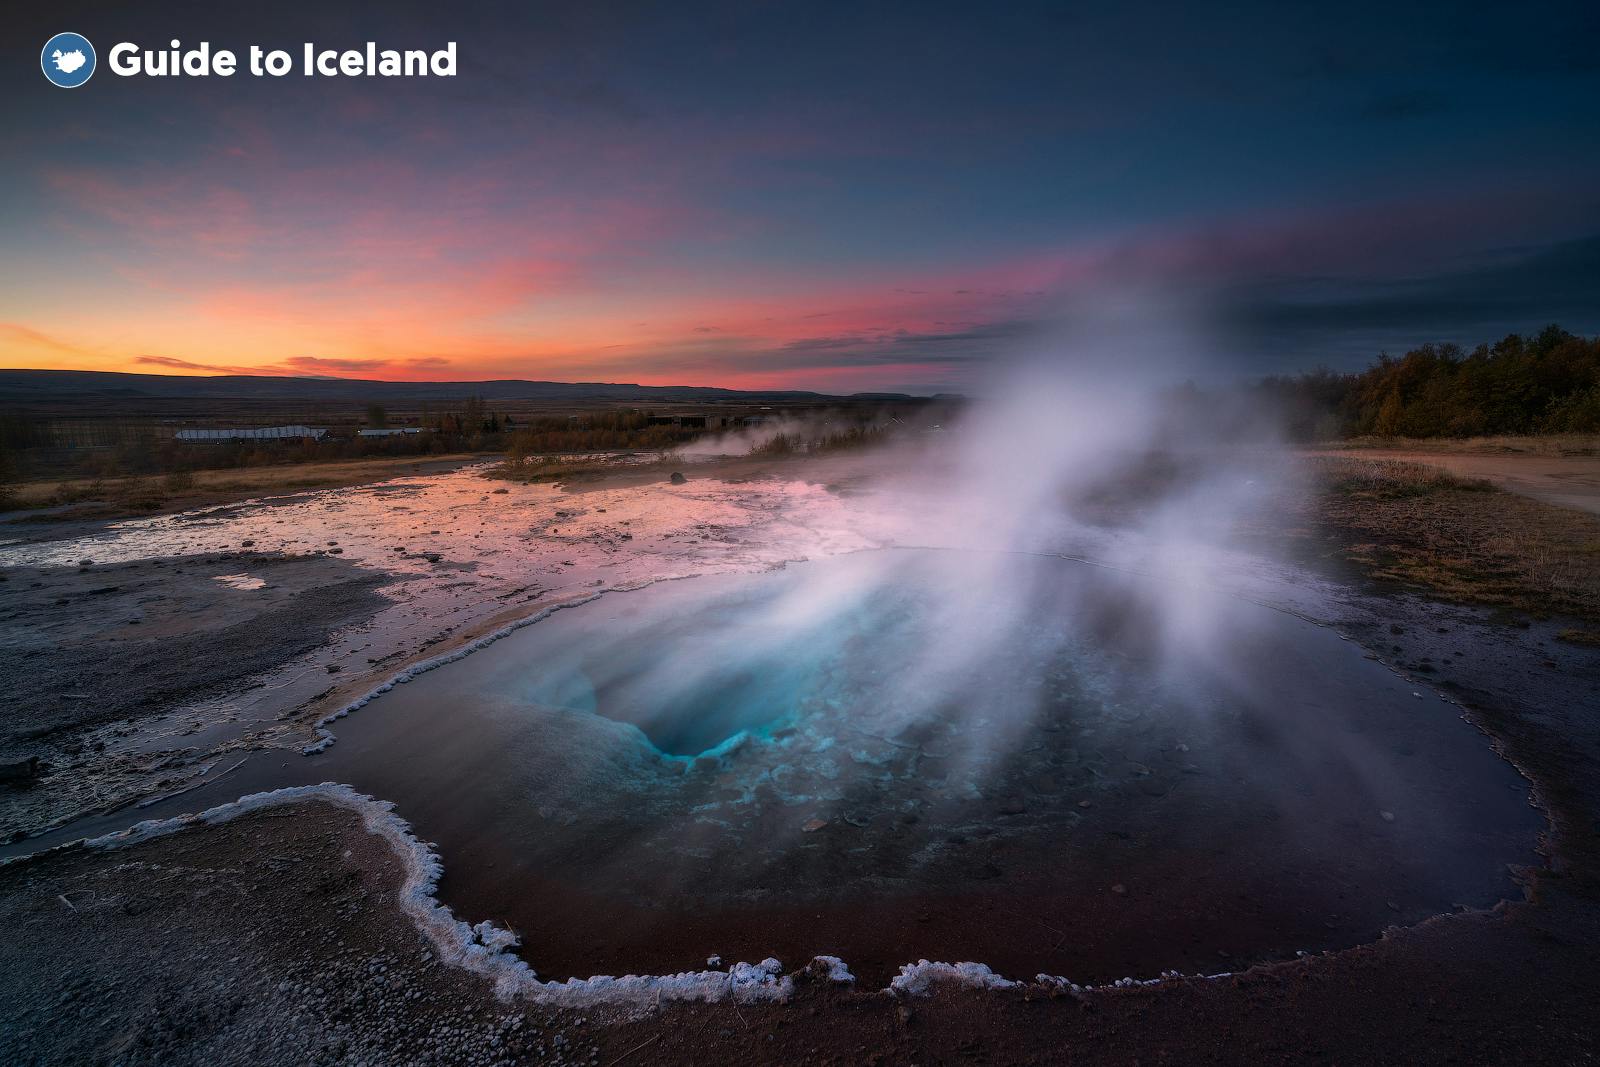 De geiser Strokkur in de Golden Circle van IJsland